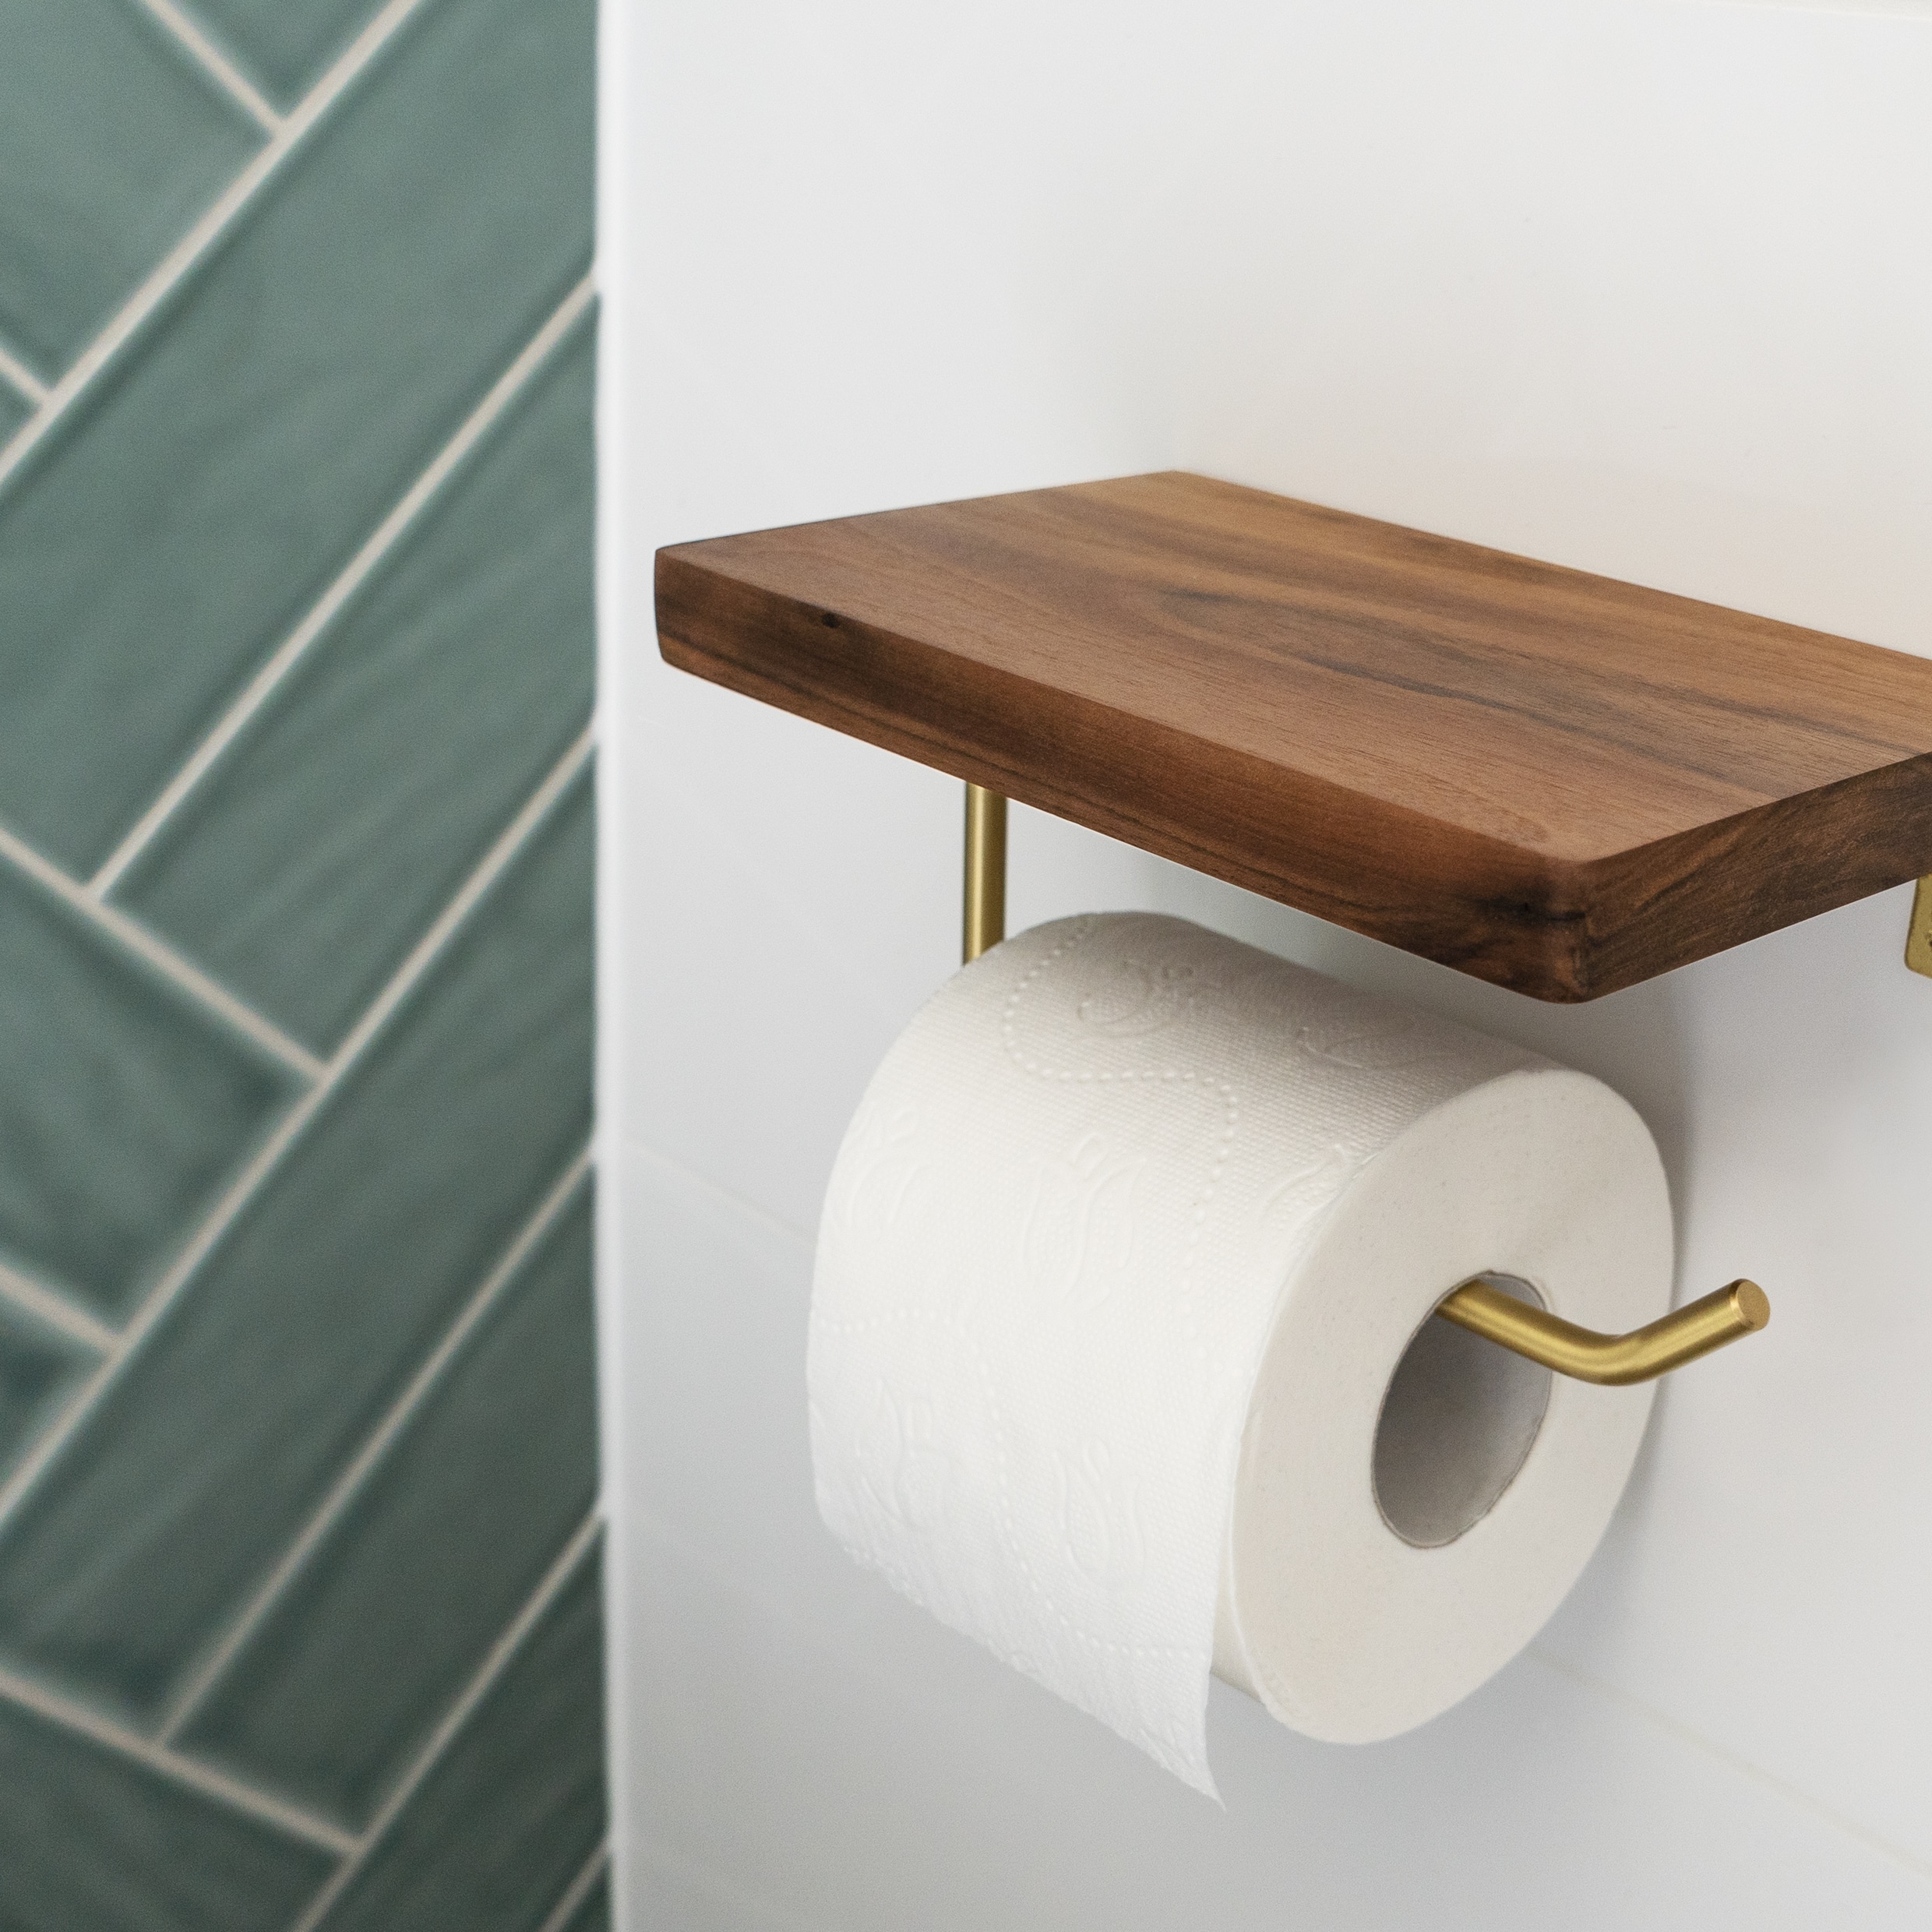 Modern plankje als wc rol houder met legplank voor je mobiel